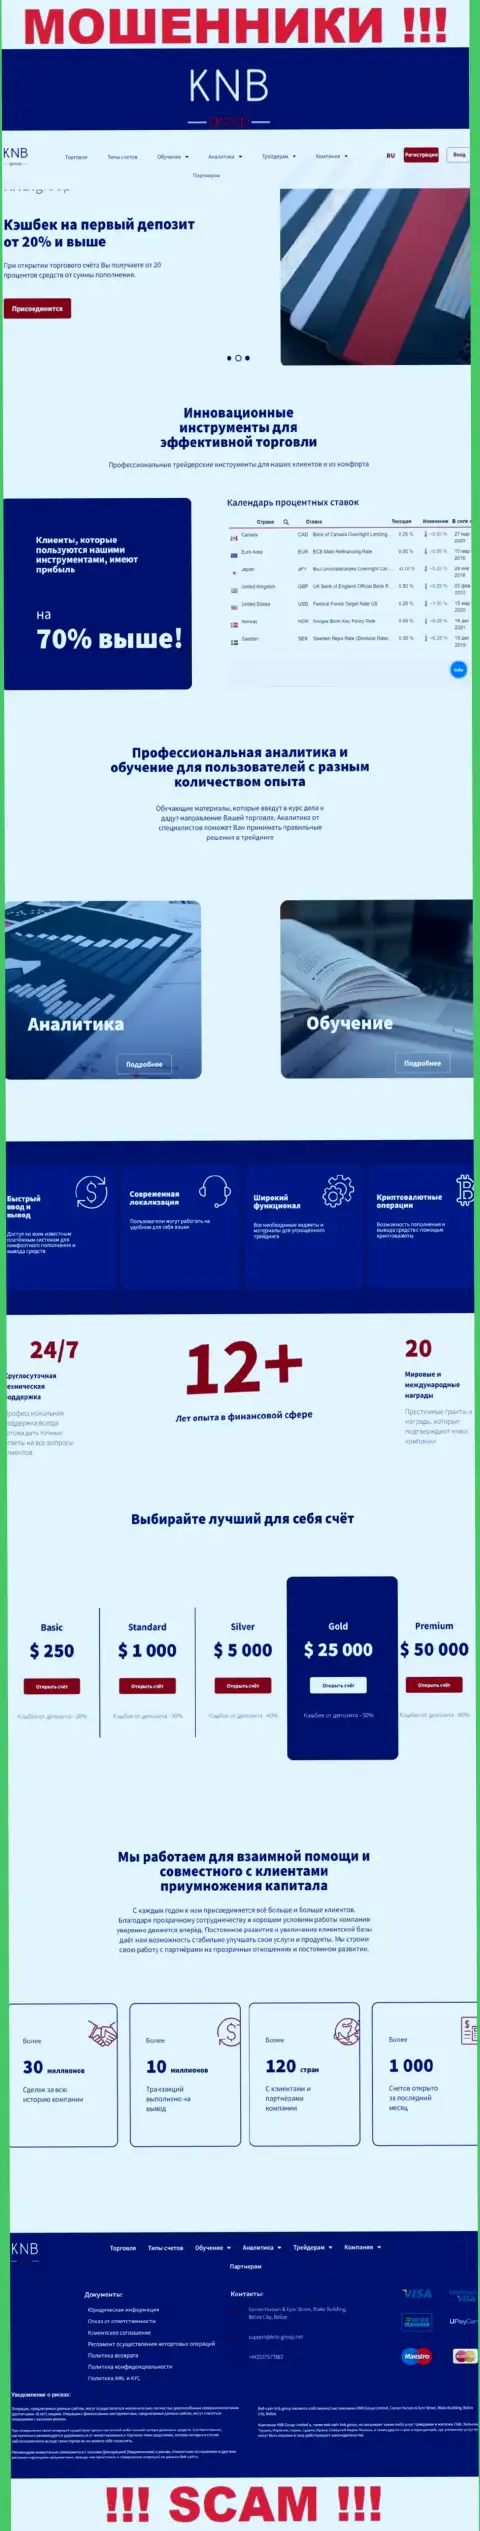 Обзор официального web-портала мошенников KNB Group Limited